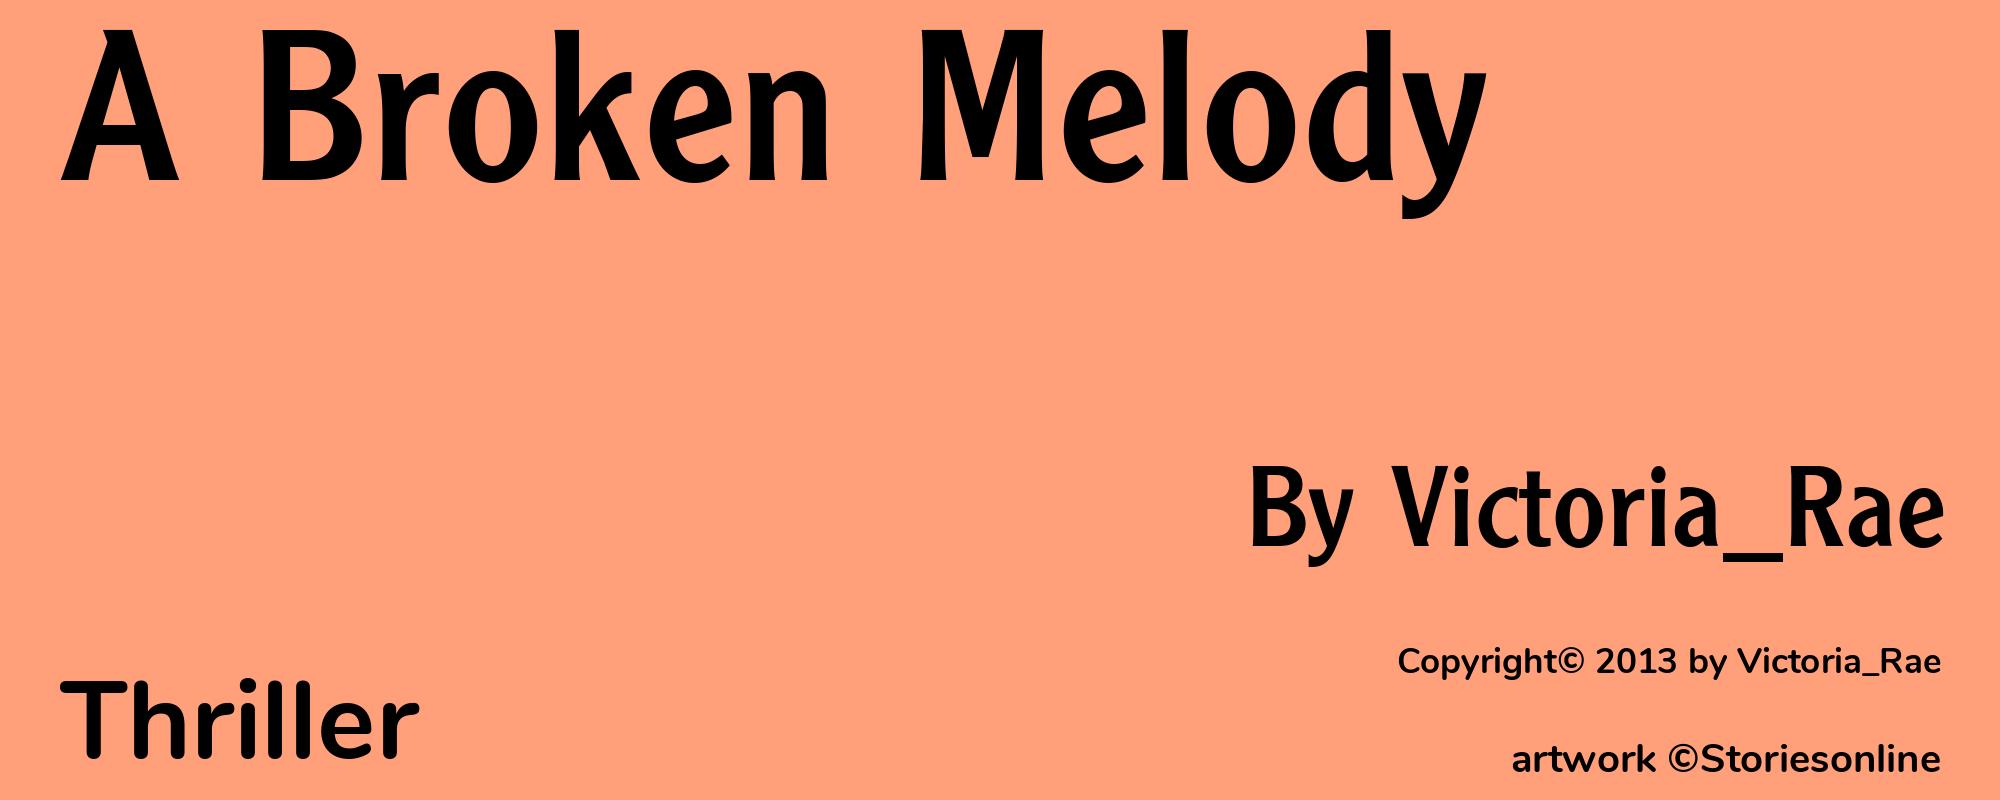 A Broken Melody - Cover